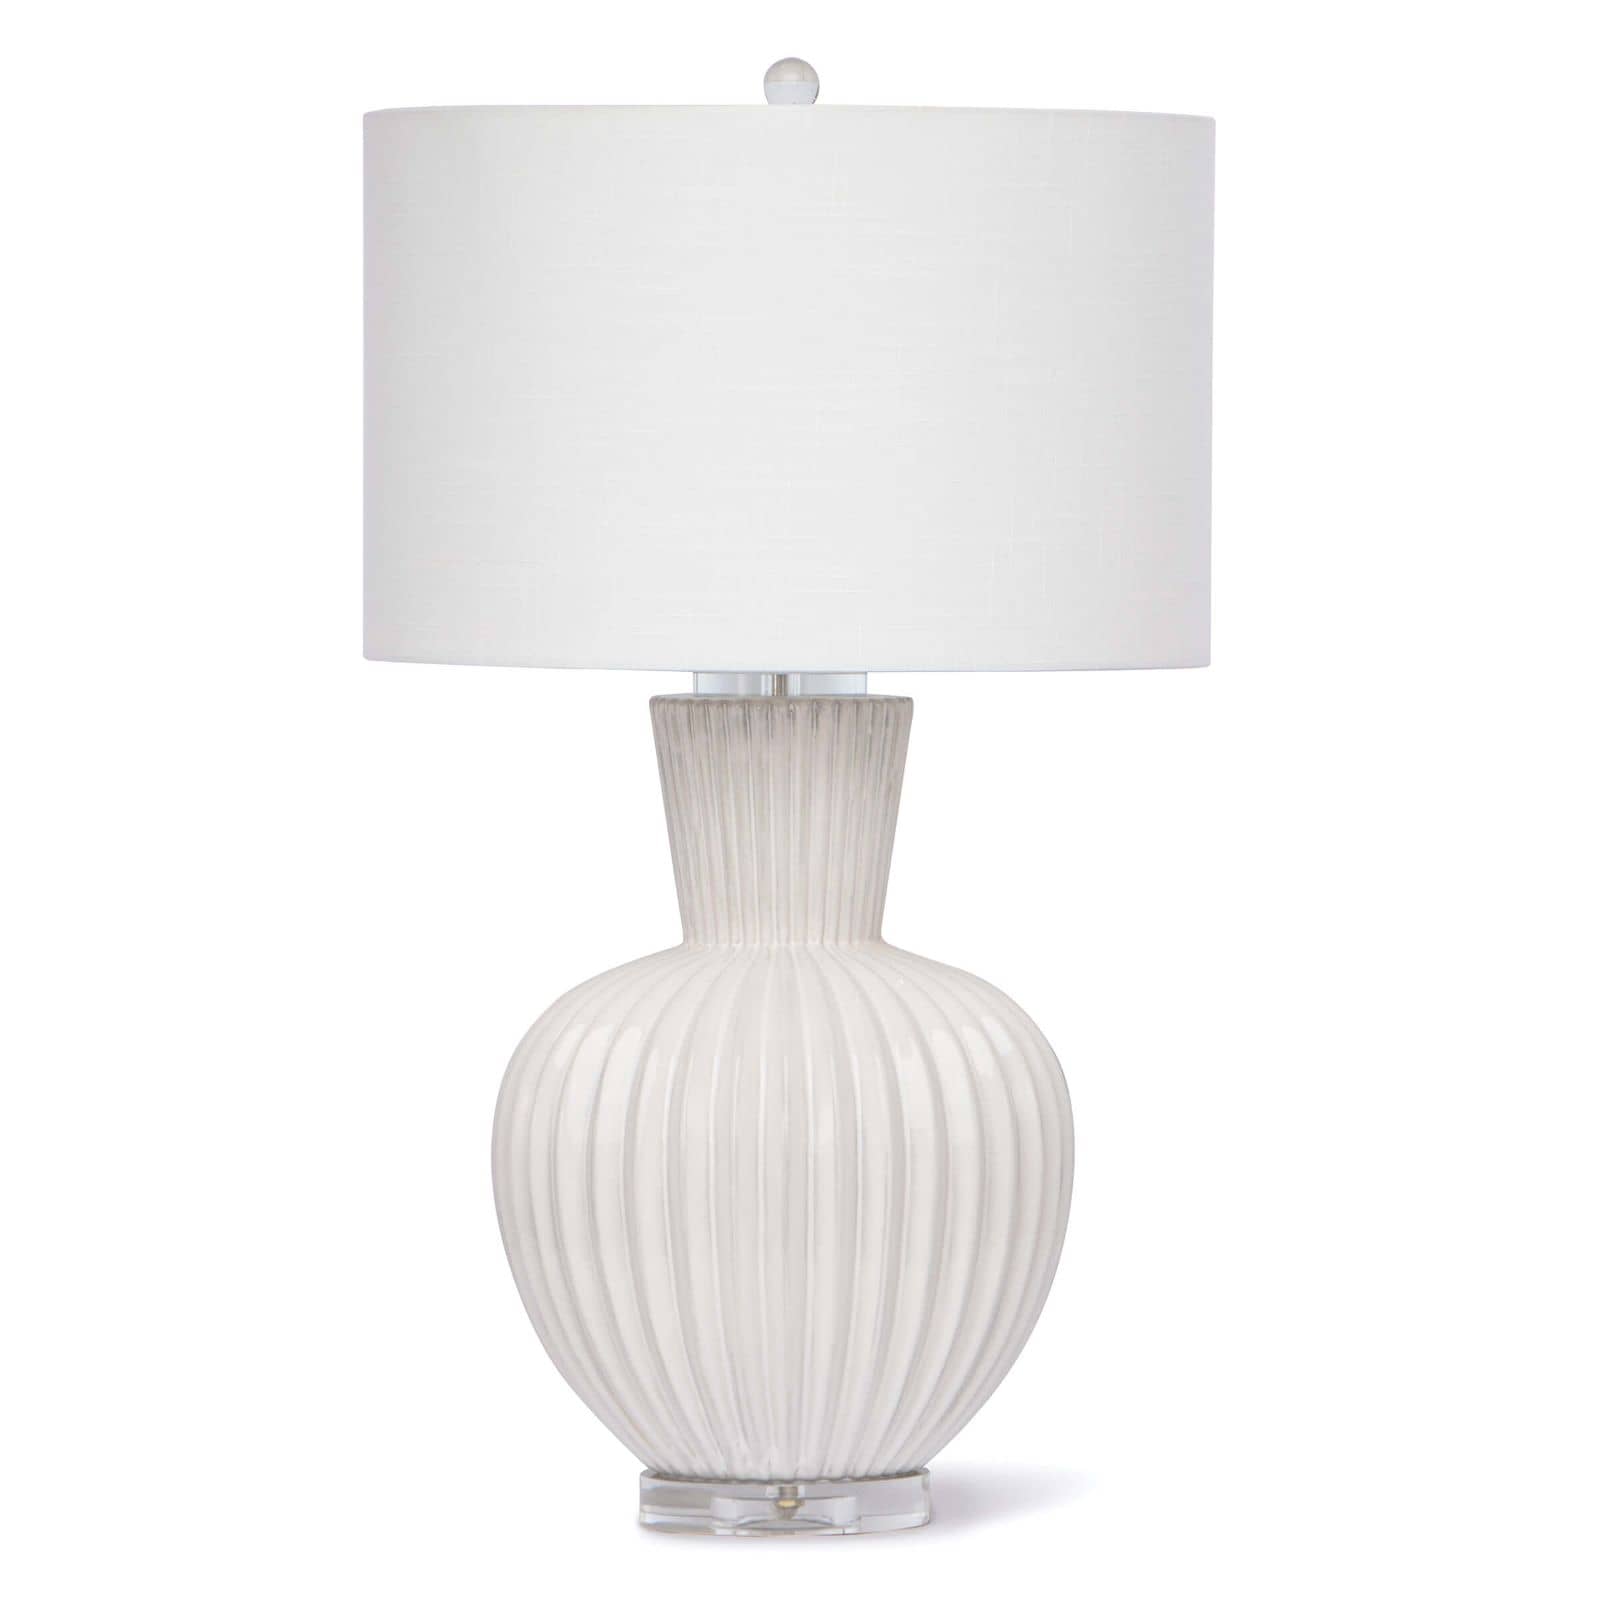 Madrid Ceramic Table Lamp in White by Regina Andrew